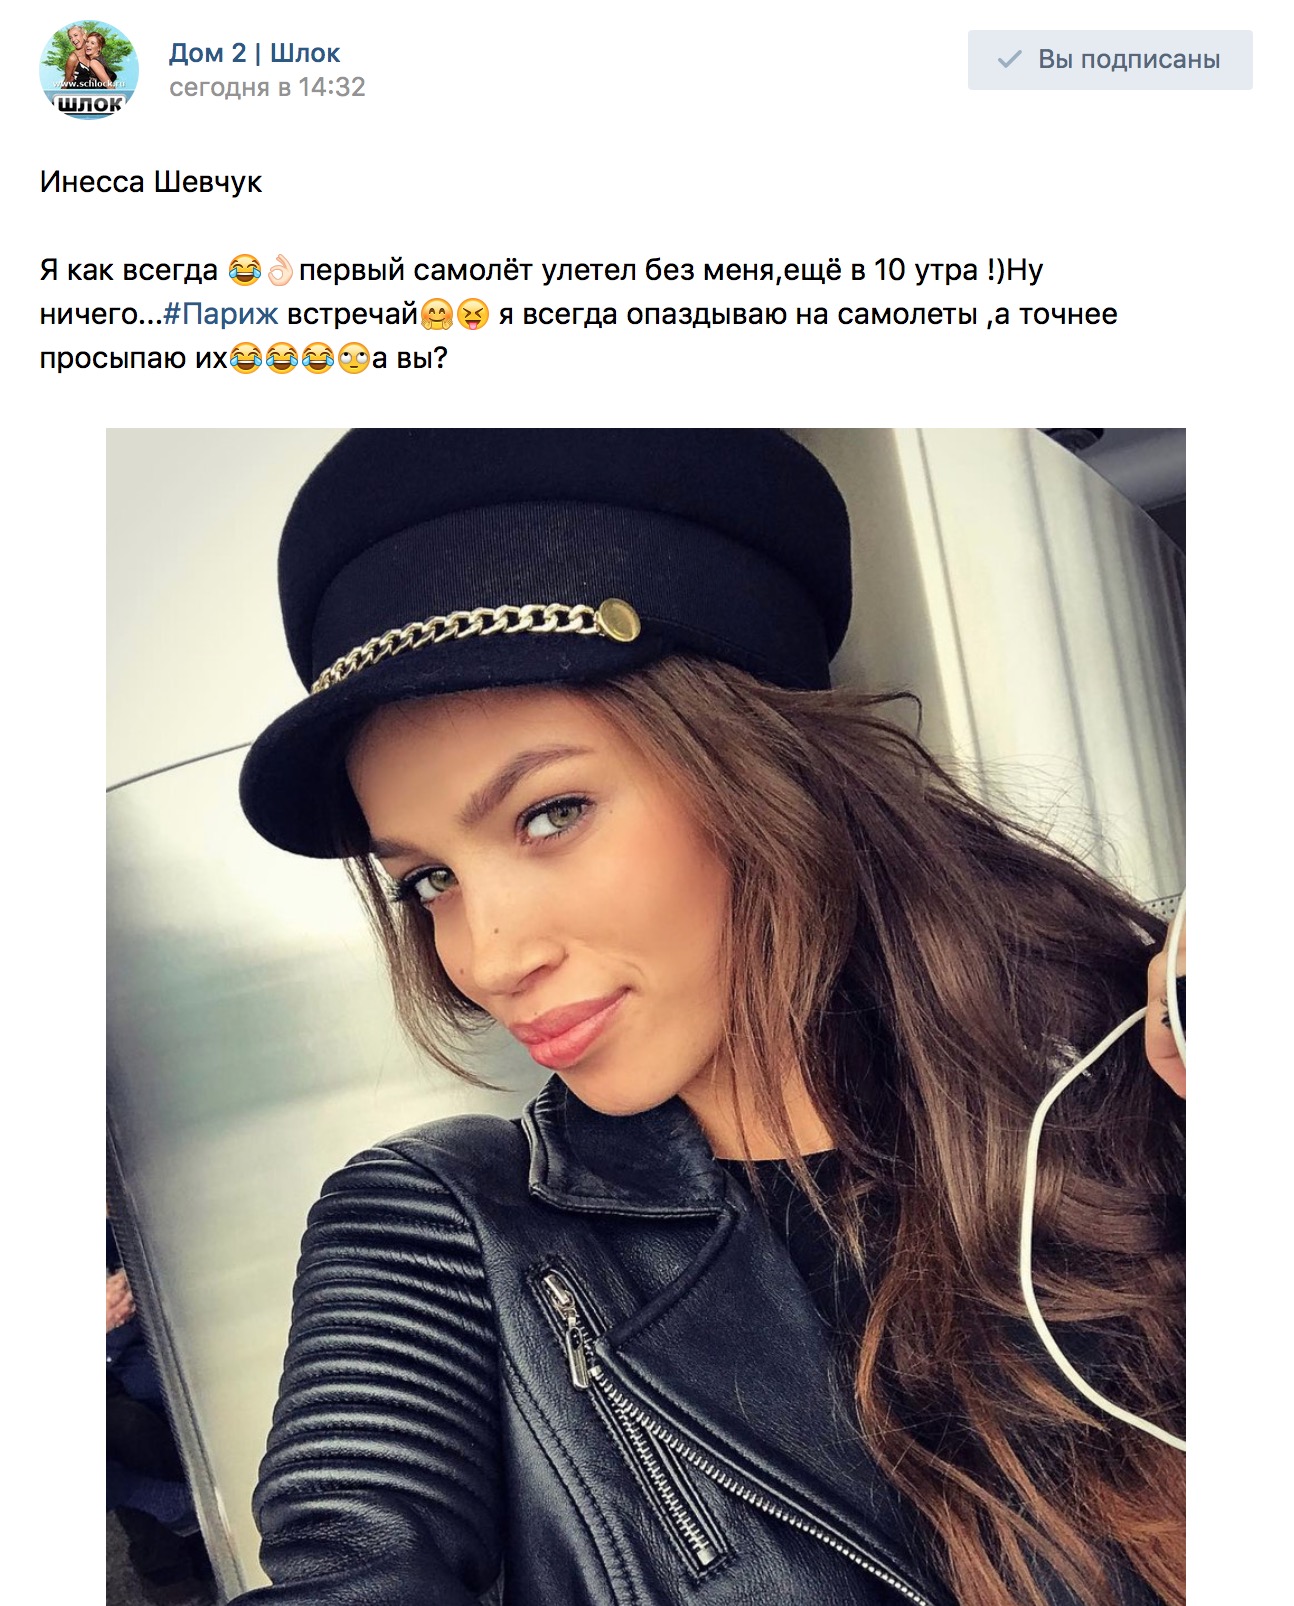 Инесса Шевчук в самолете